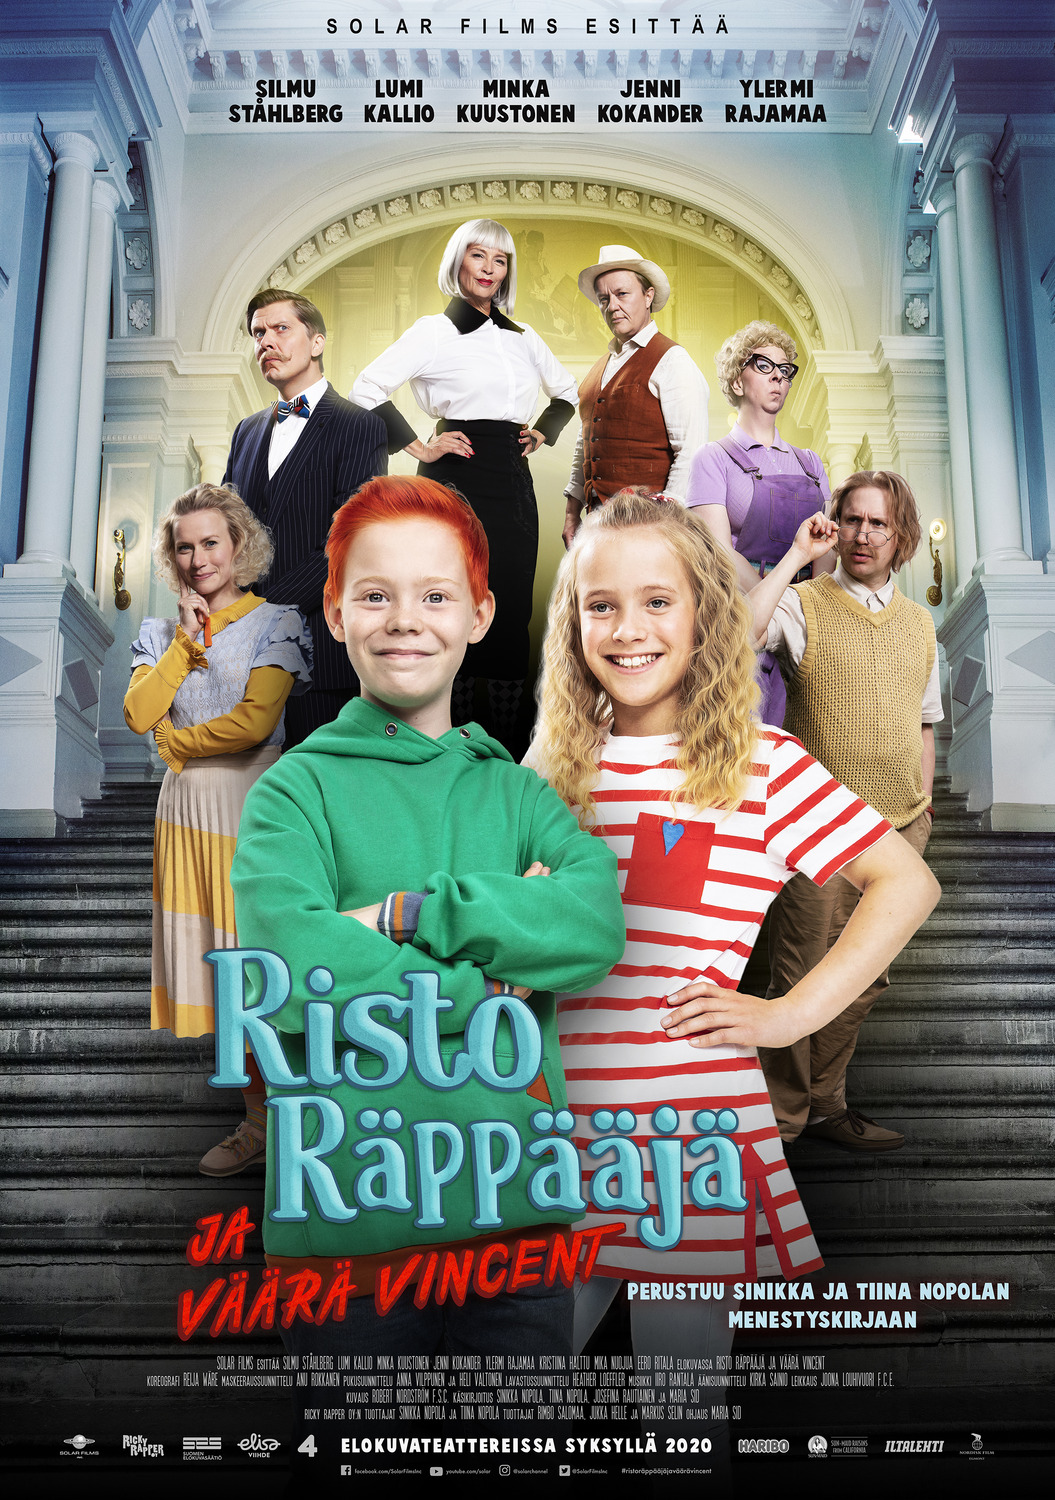 Extra Large Movie Poster Image for Risto Räppääjä ja väärä Vincent 